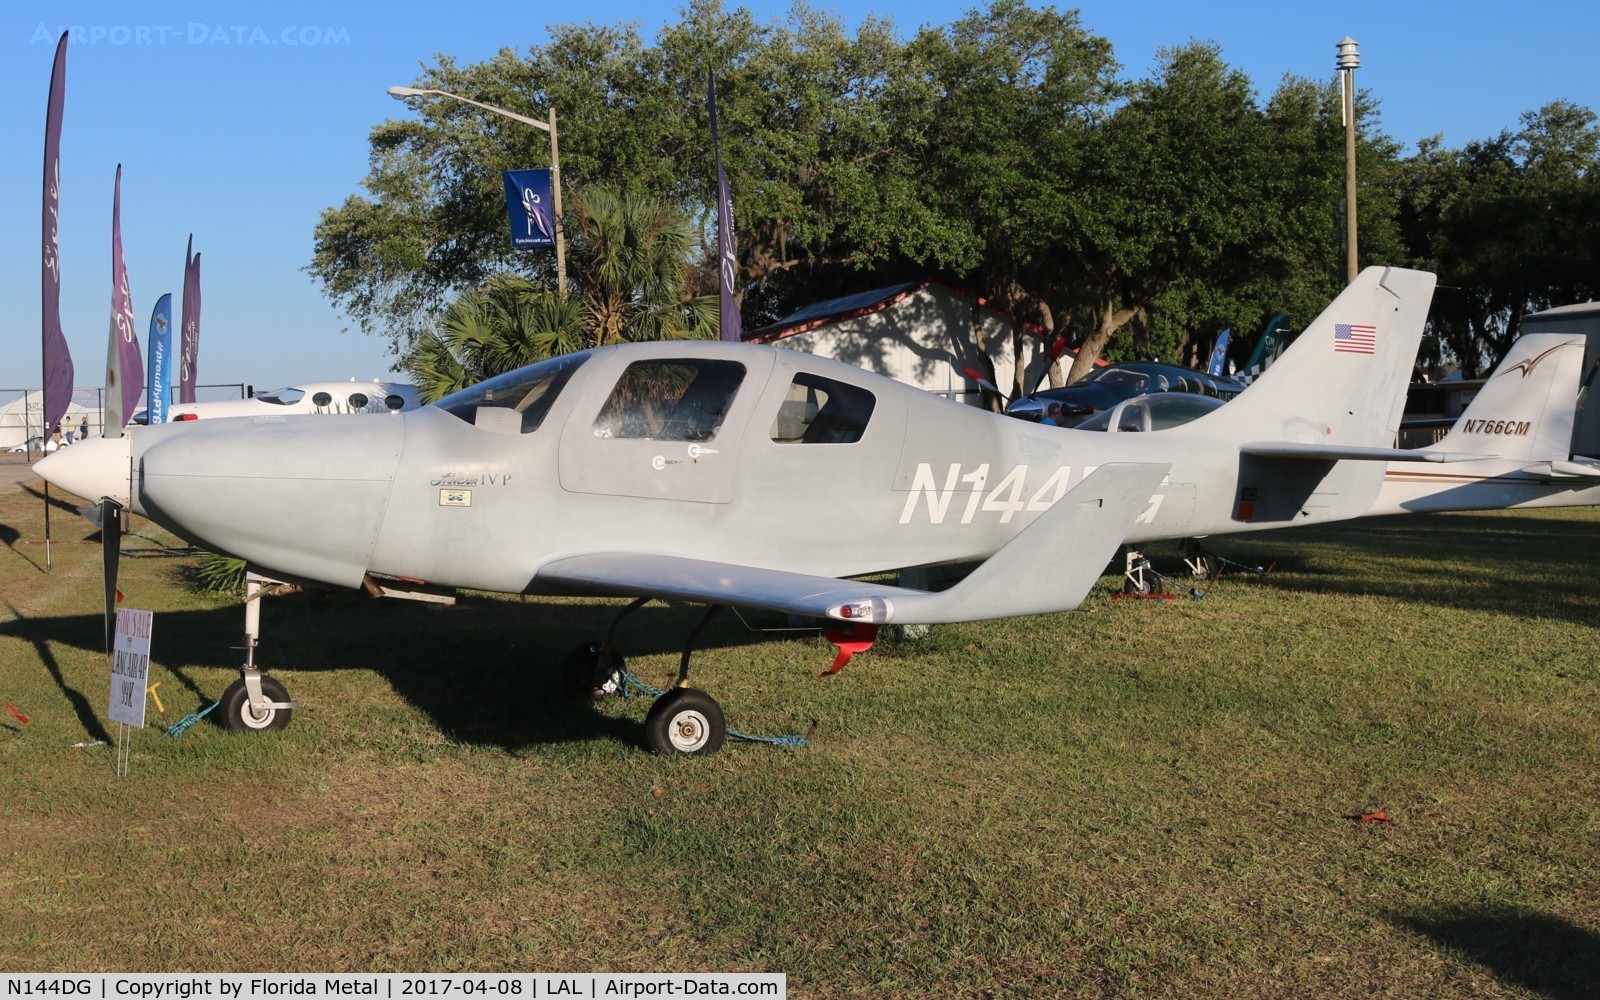 N144DG, 1999 Lancair IV-P C/N LIV-144-P, Lancair IV-P